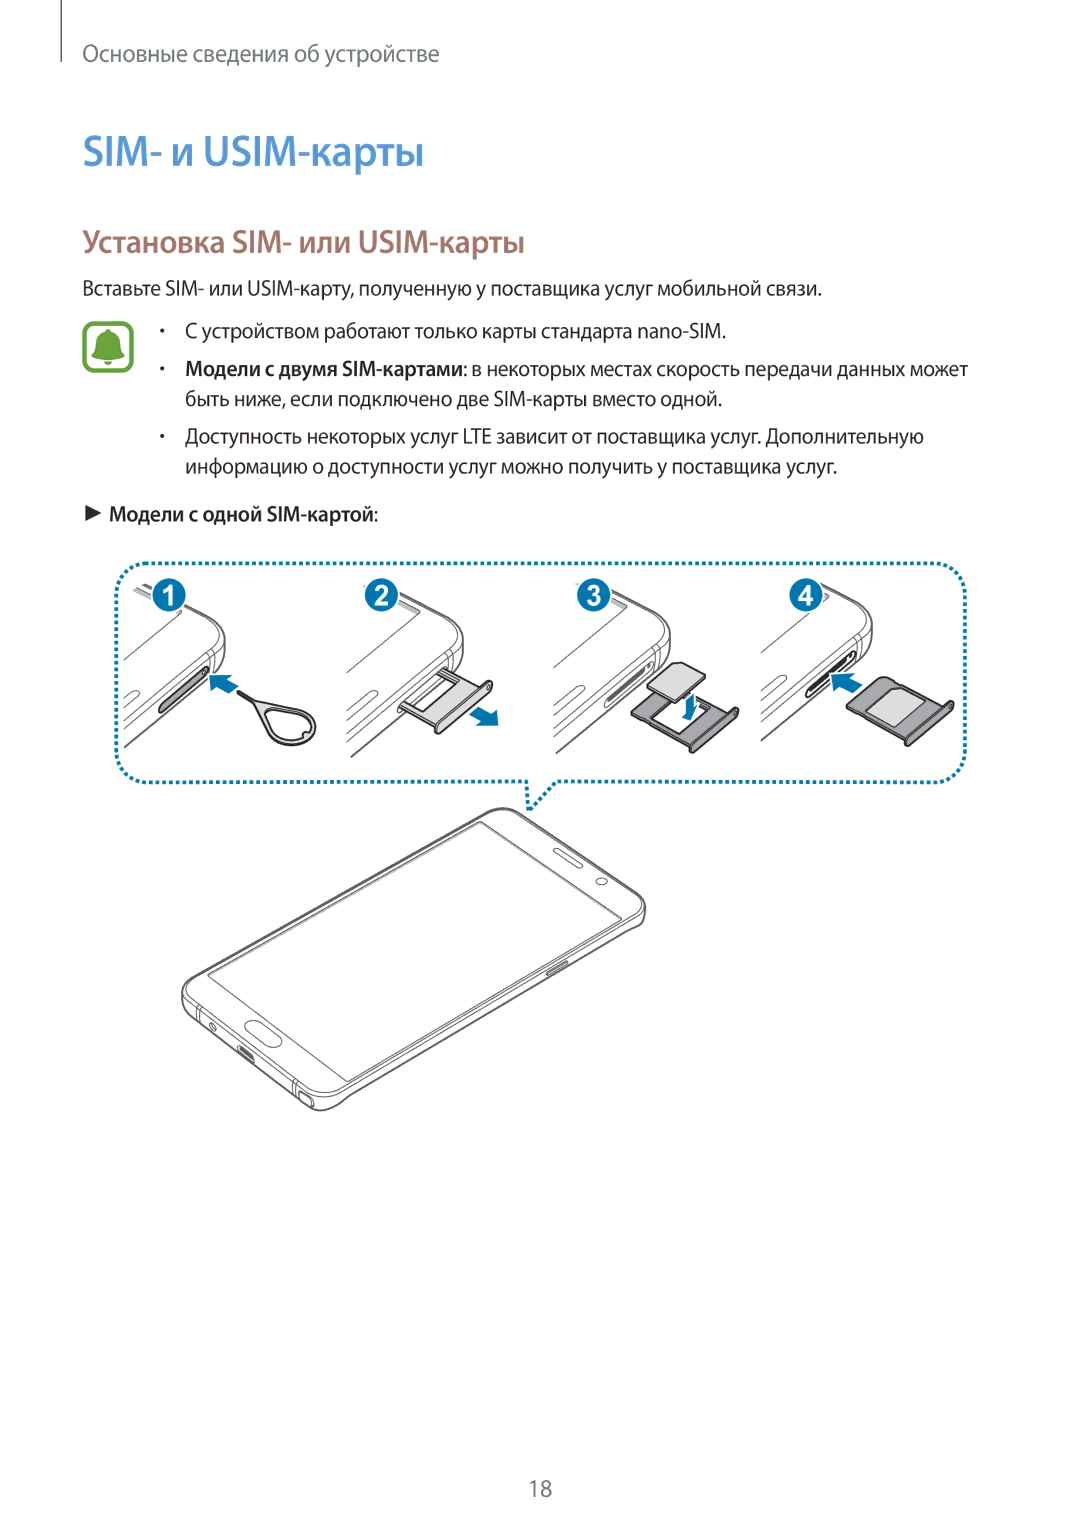 Samsung SM-N920CZKESER, SM-N920CZDESER manual SIM- и USIM-карты, Установка SIM- или USIM-карты, Модели с одной SIM-картой 